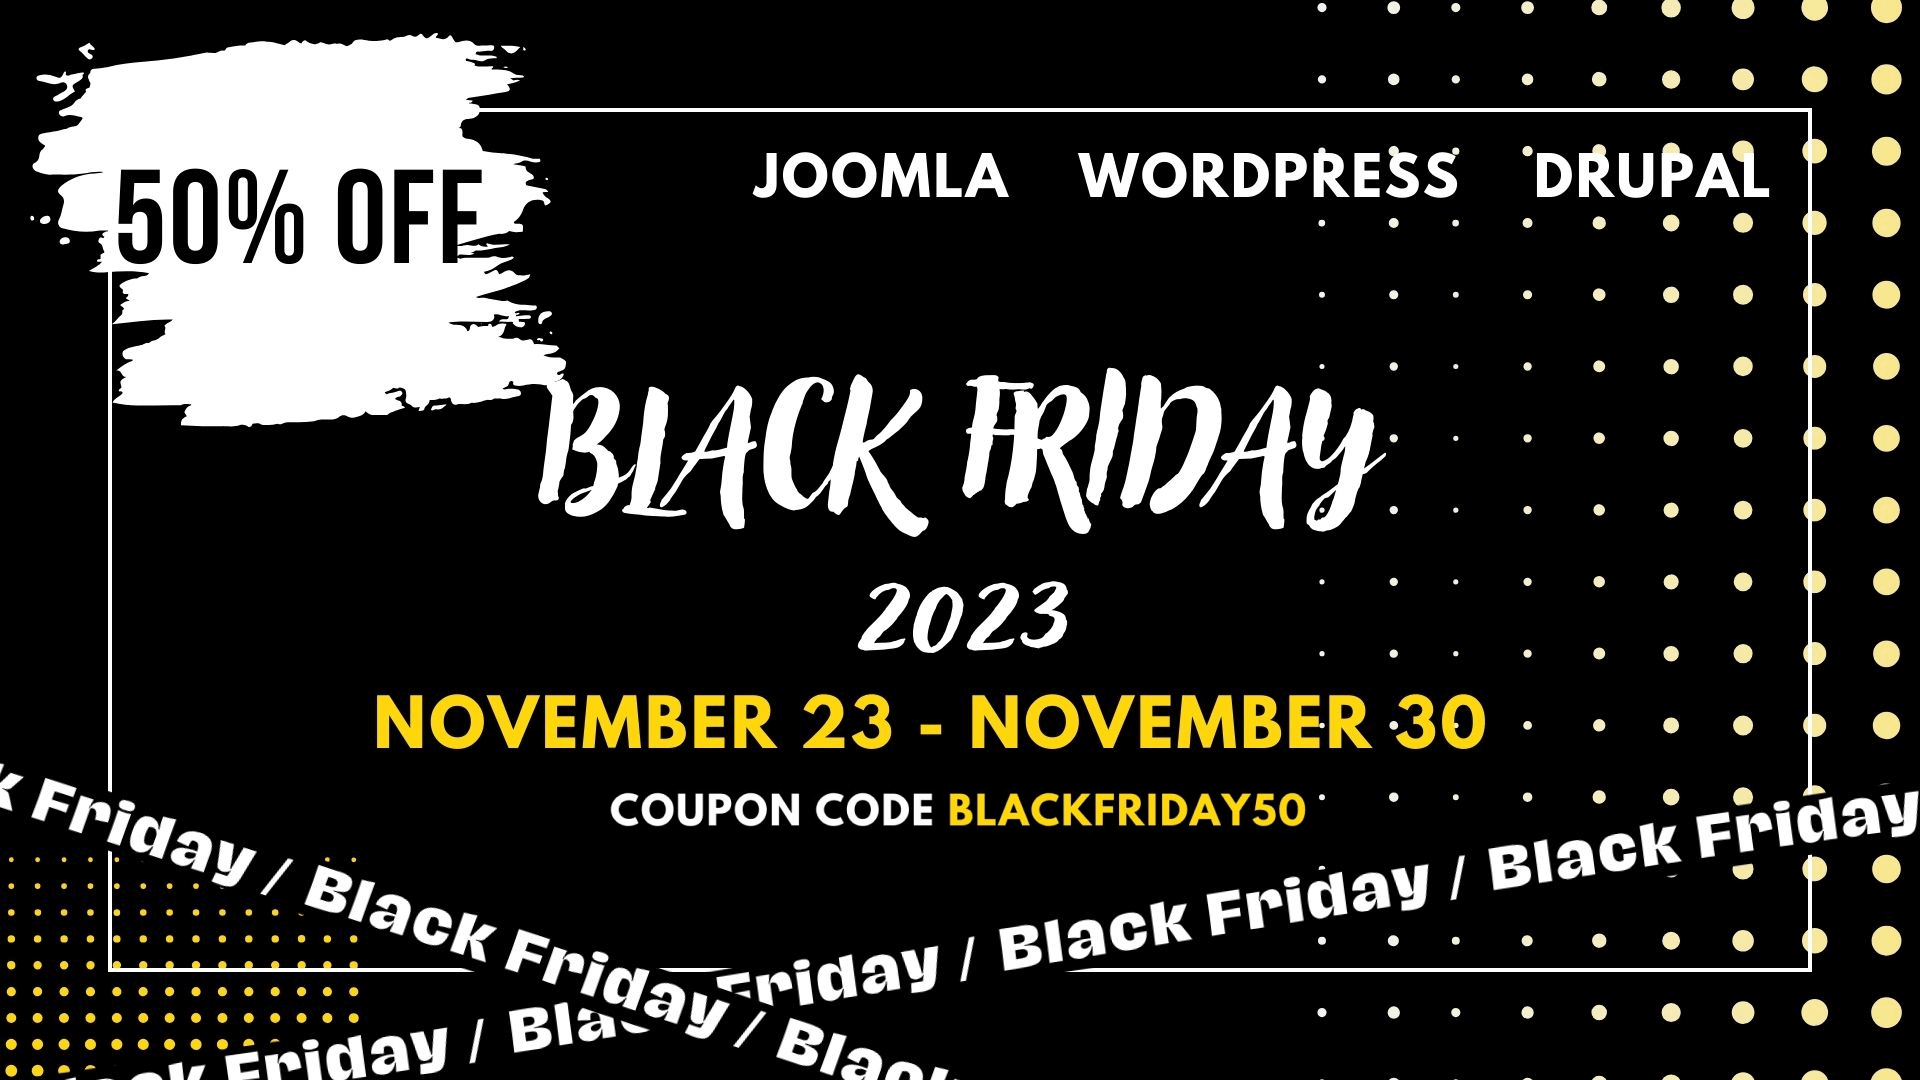 Joomla News: BLACK FRIDAY 2023